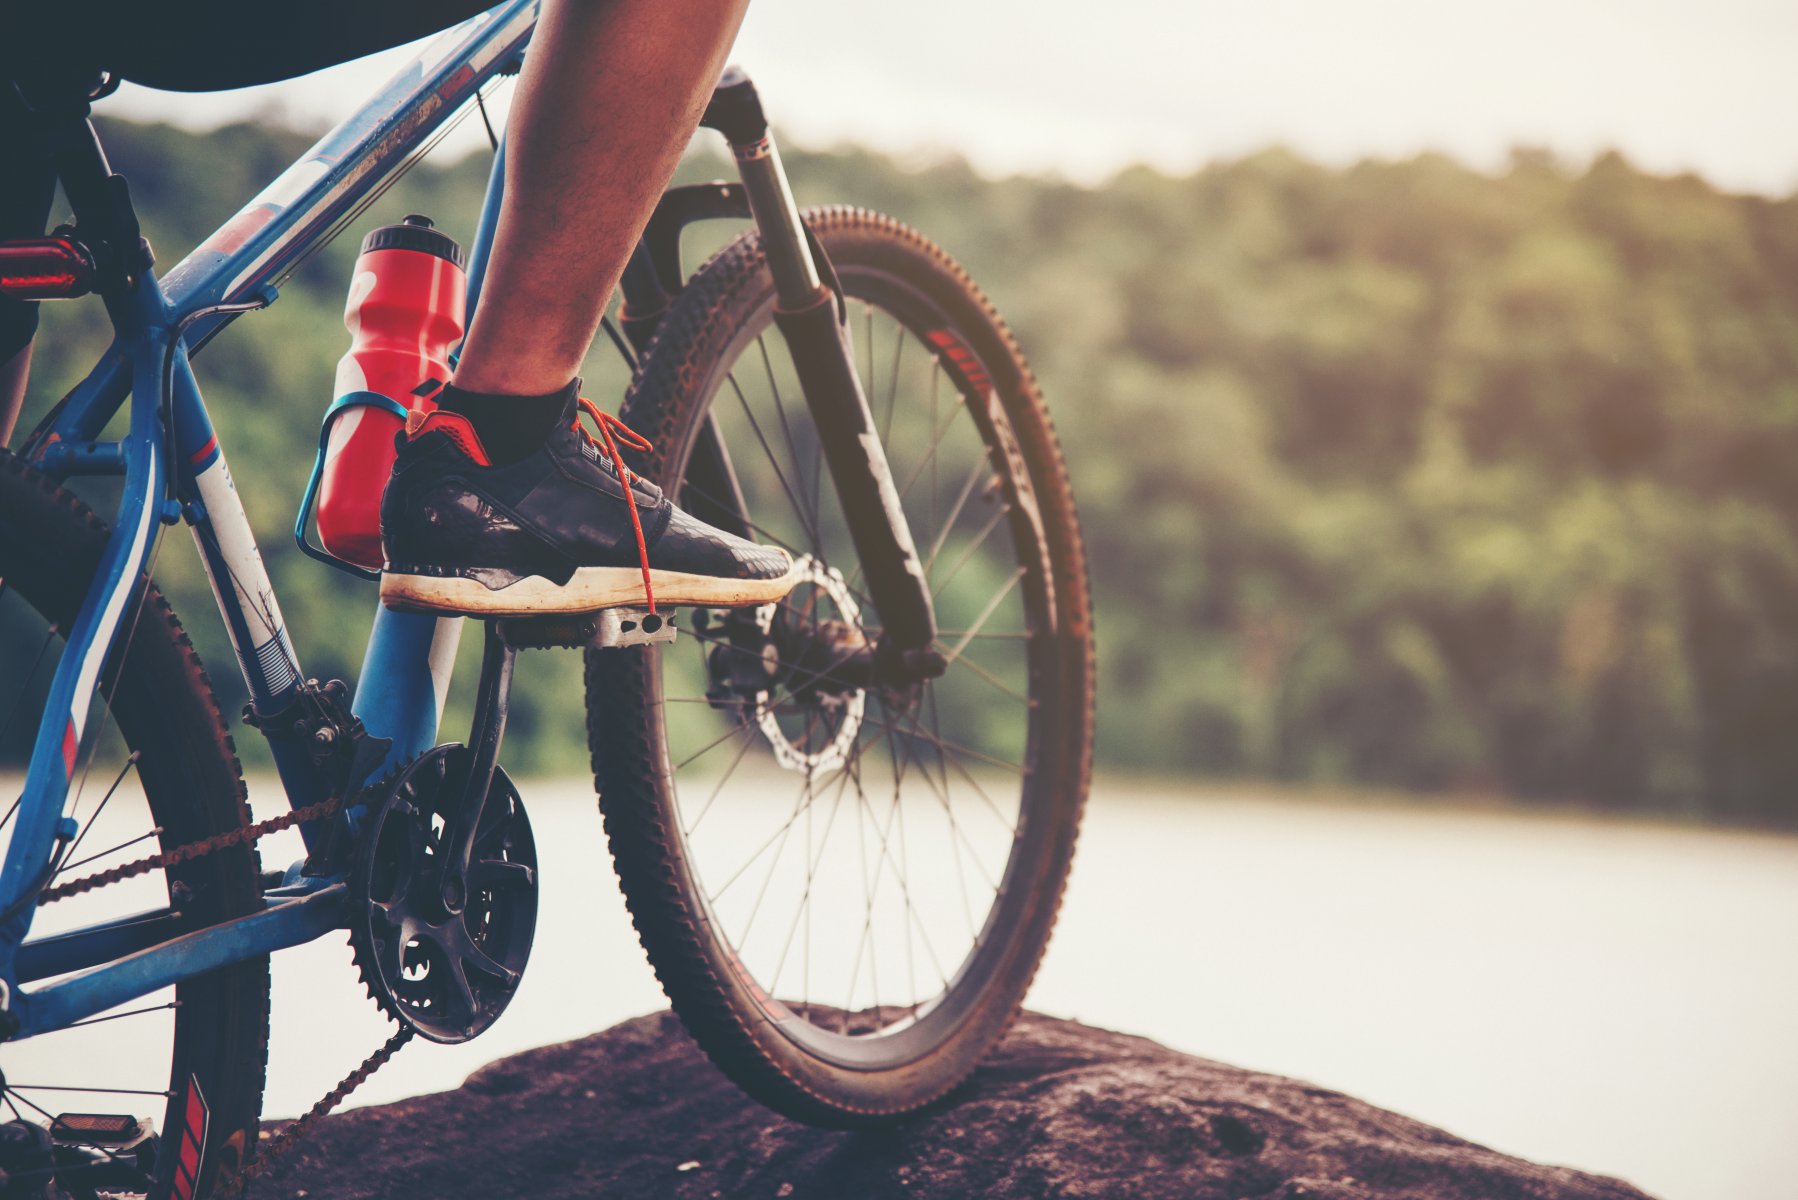 Сотрудники ГИБДД в Клину спасли проколовшего колесо велосипеда 11-летнего мальчика 